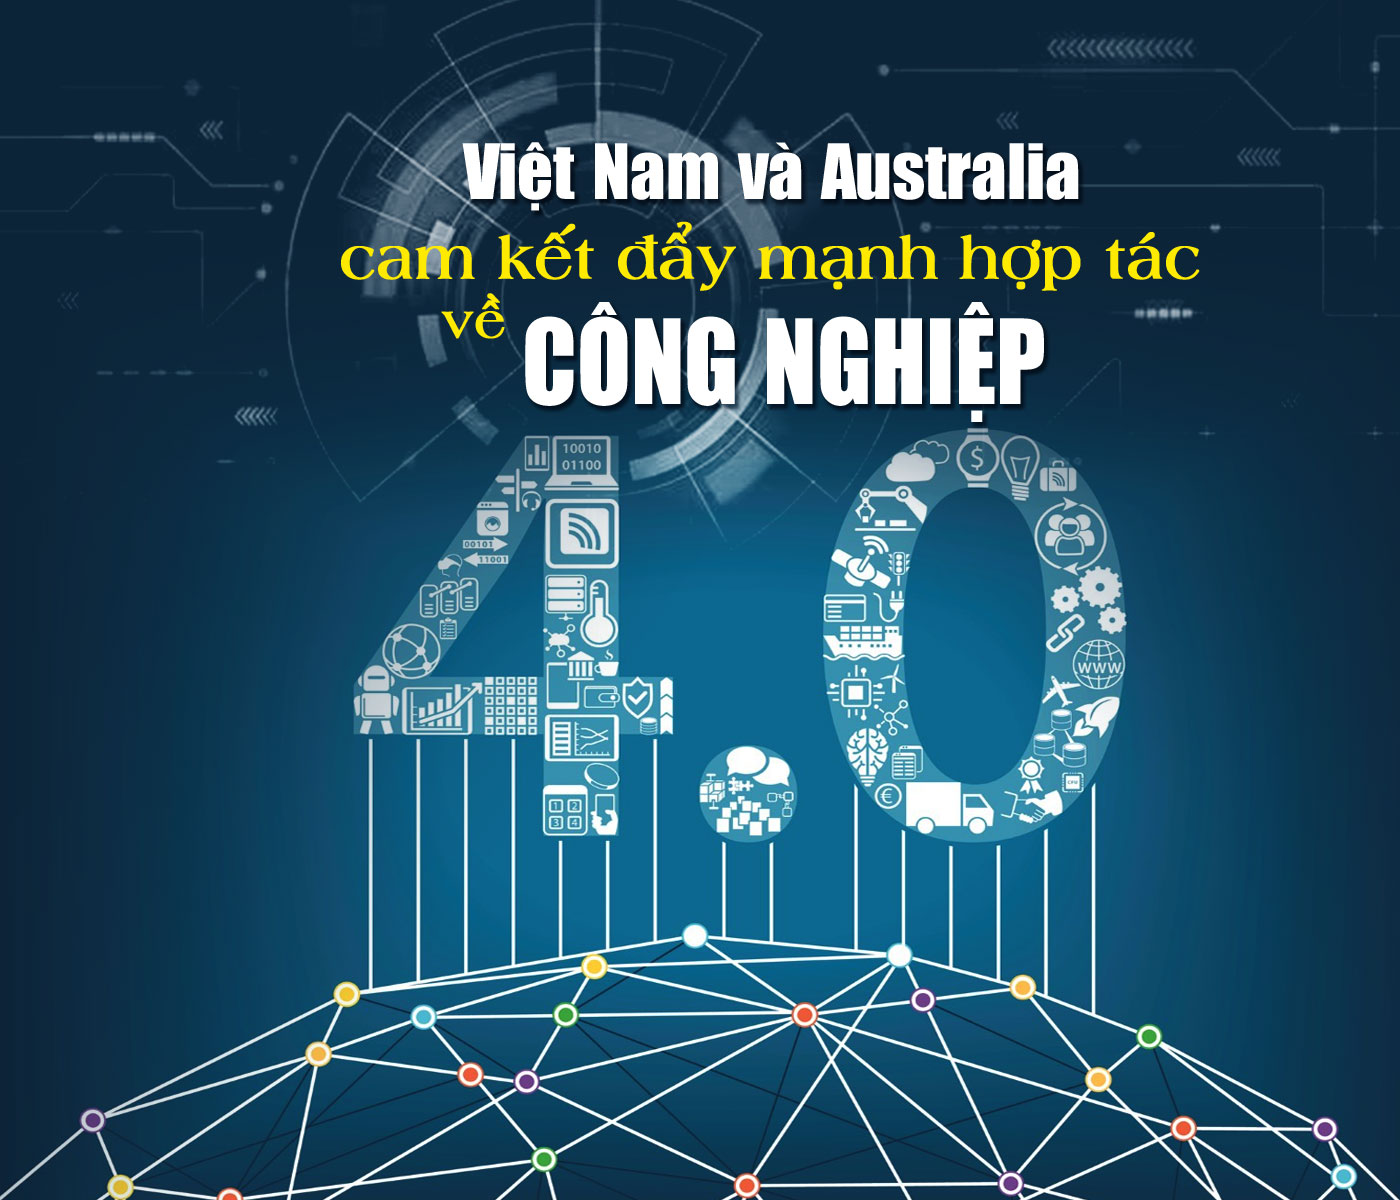 Việt Nam và Australia cam kết đẩy mạnh hợp tác về Công nghiệp 4.0 - Ảnh 1